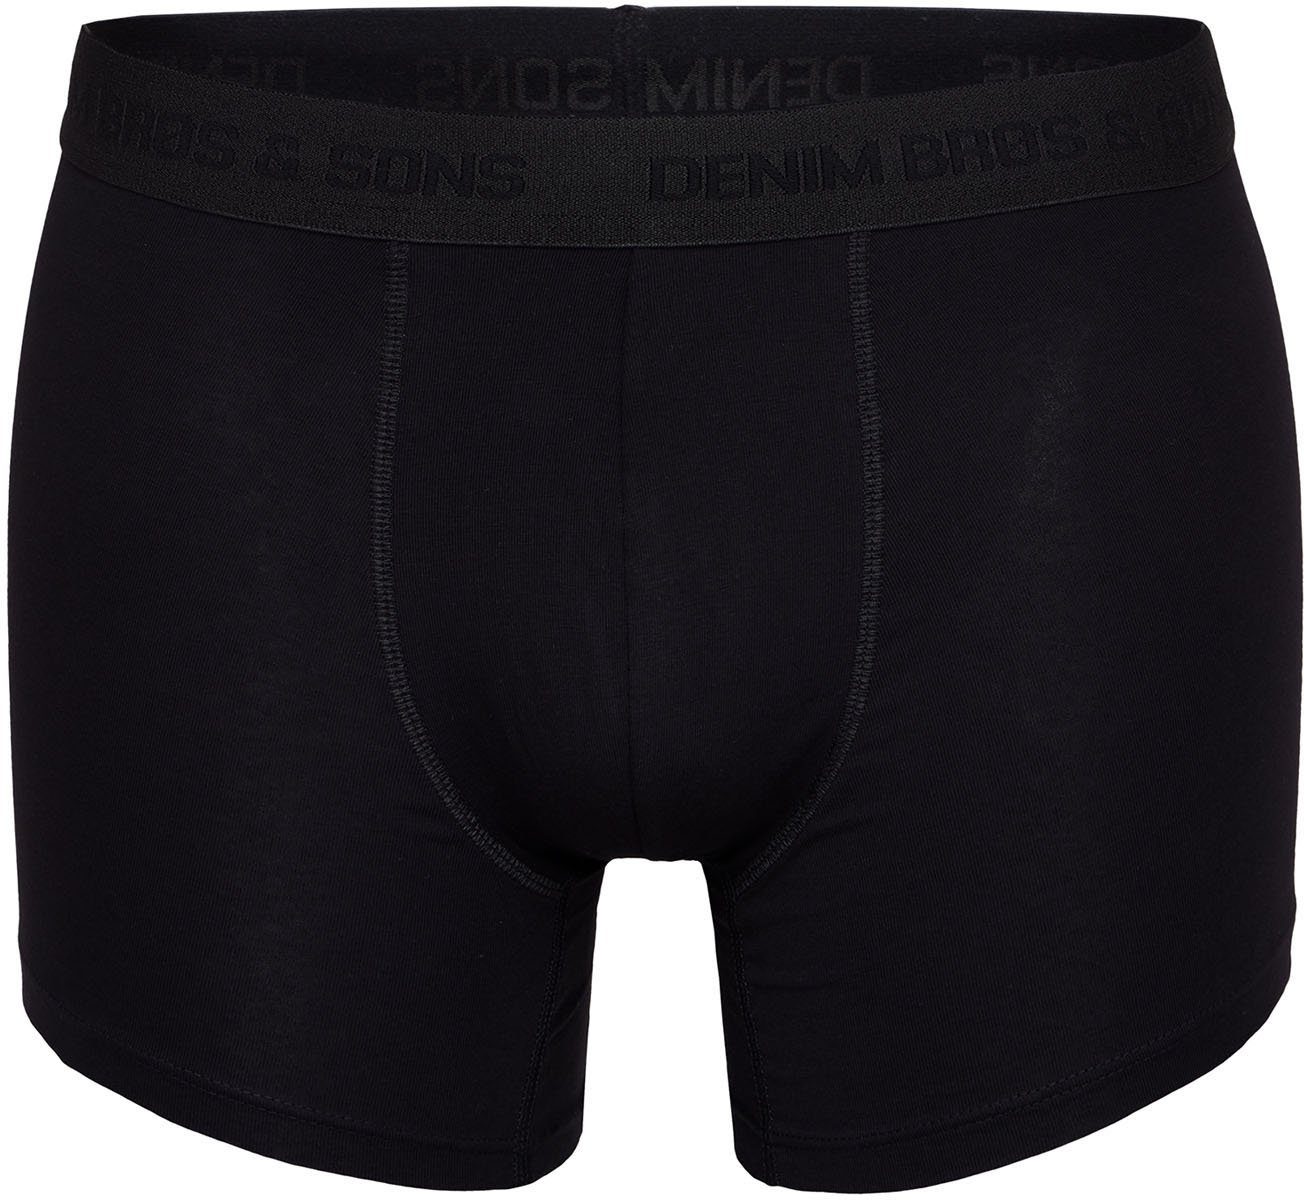 MG-1 (8-St) Retro-Boxer Mix Boxer Retro boxershorts black Colors retroshorts all